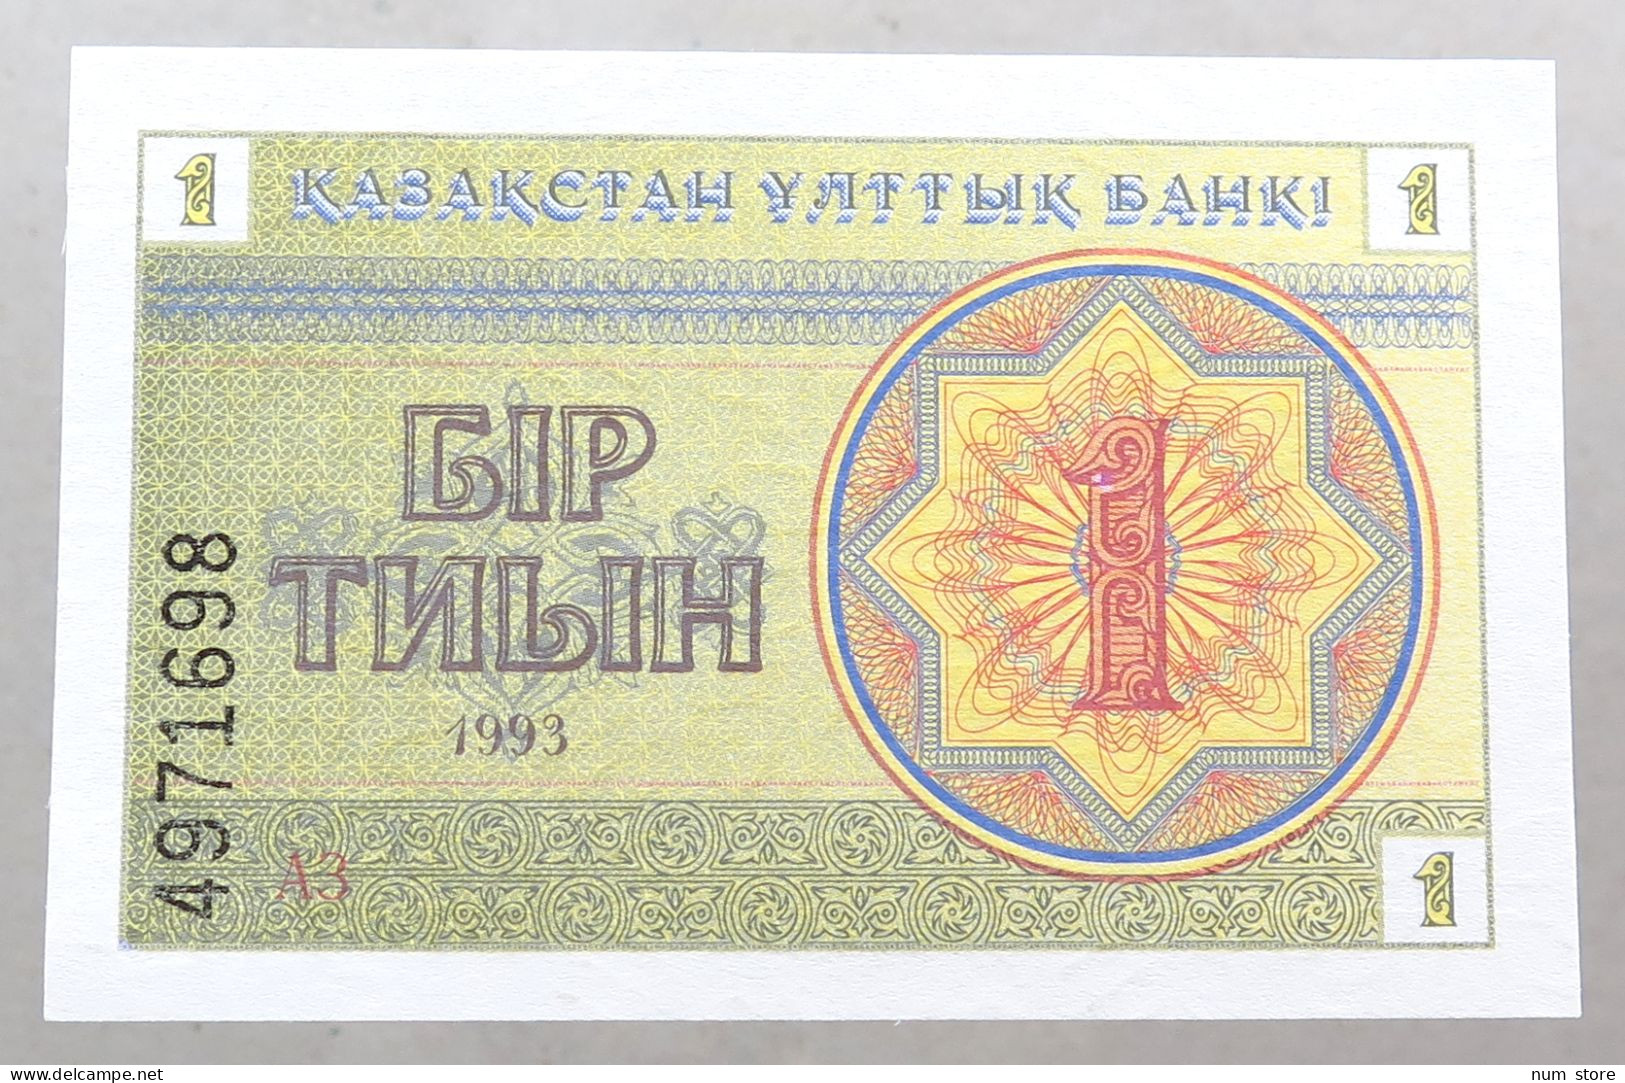 KAZAKHSTAN 1 TENGE 1993 TOP #alb051 1591 - Kazakhstan